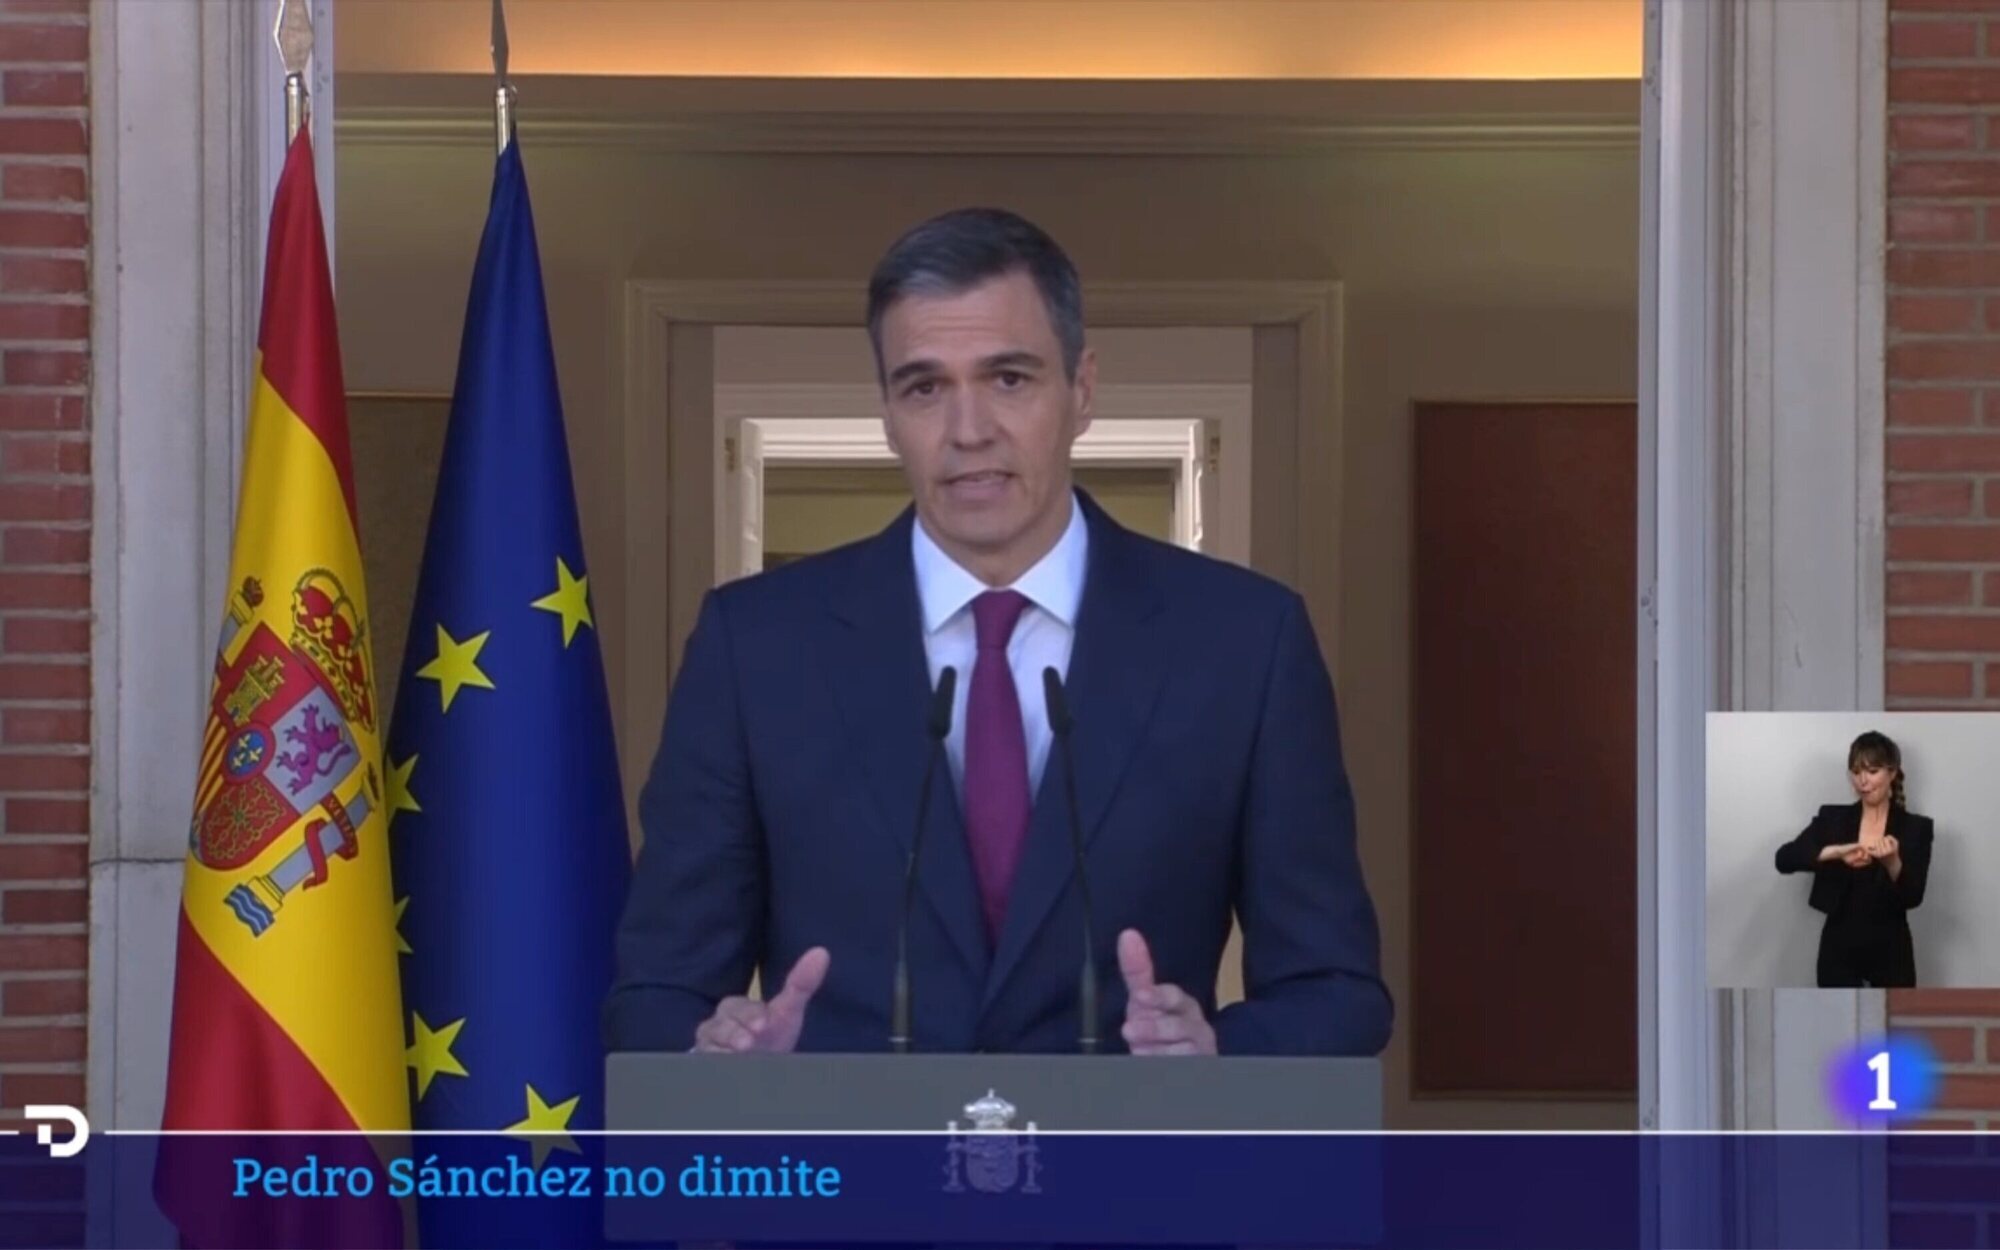 Pedro Sánchez concede a La 1 su primera entrevista tras anunciar su permanencia en el cargo